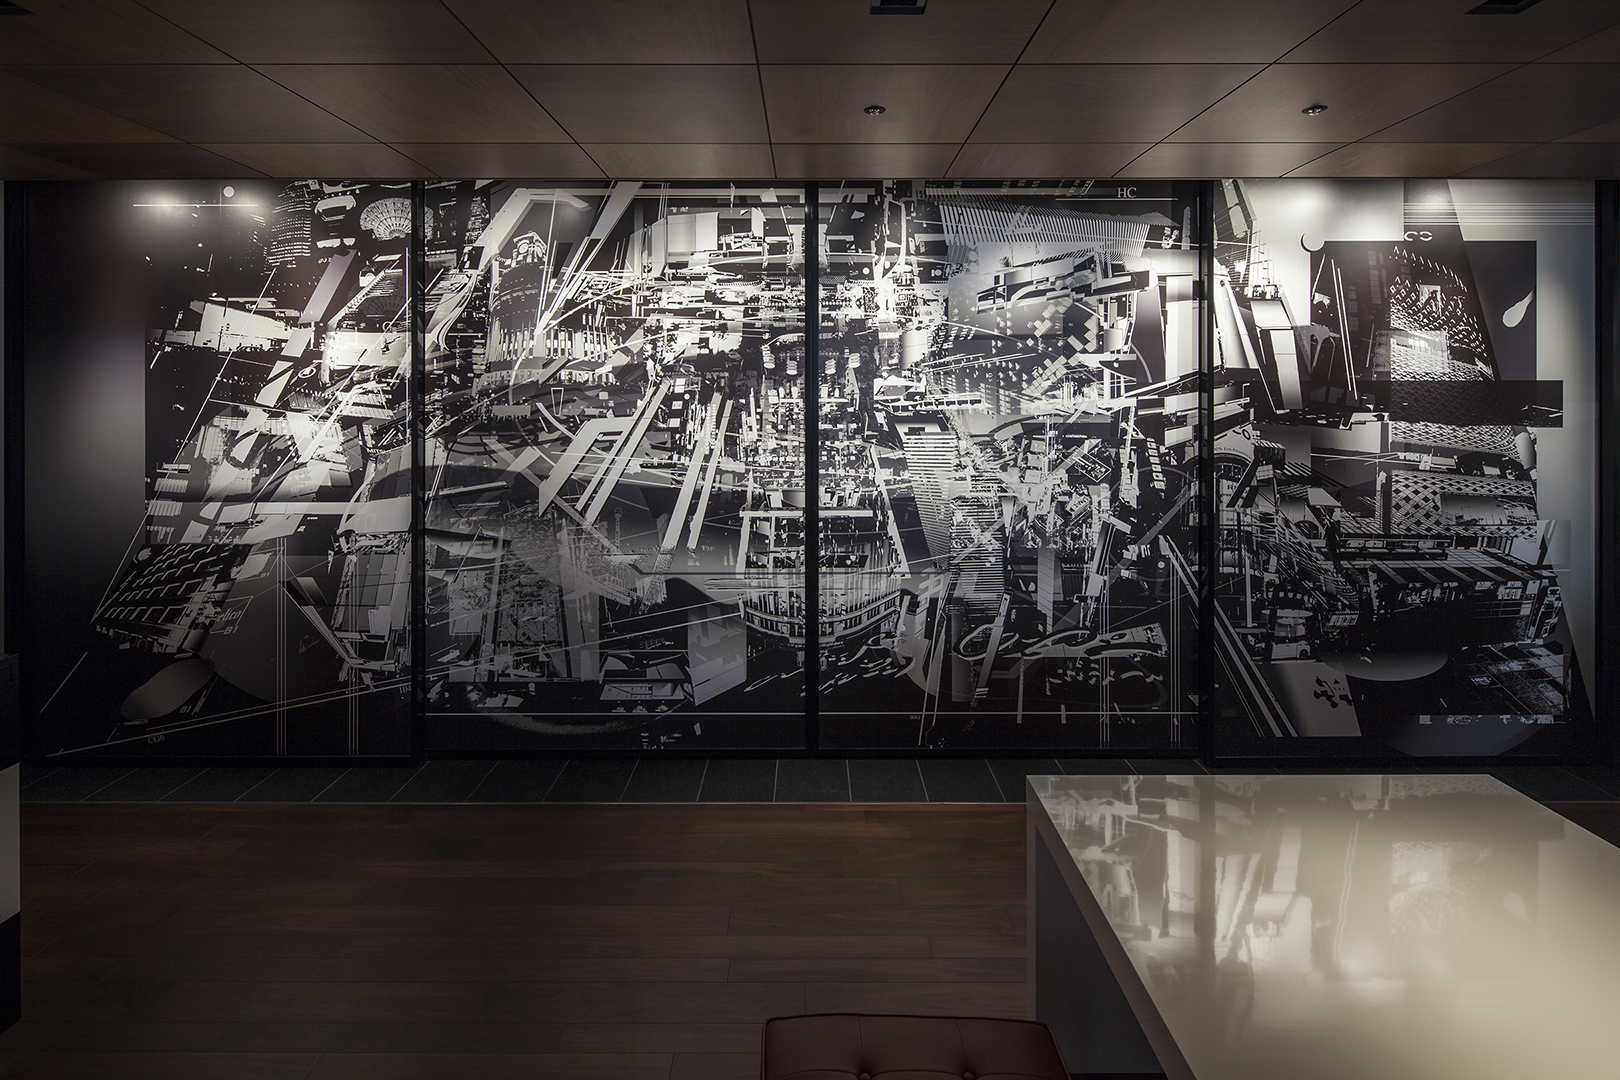 フロントスペースの壁面には銀座をイメージしたアートがあり、昼夜でアートは変化する